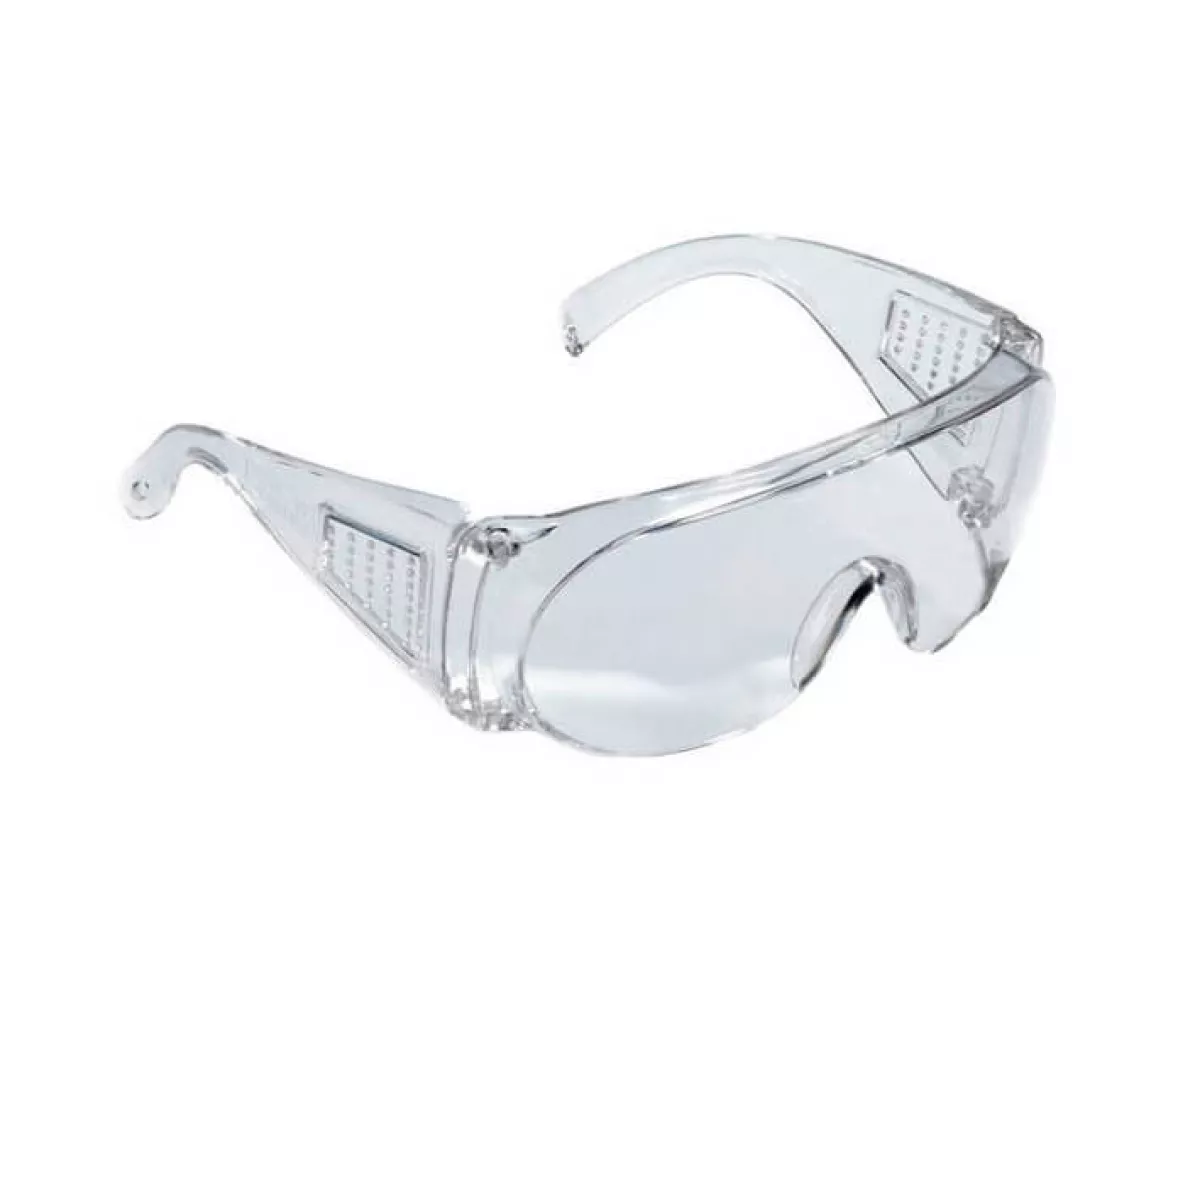 #1 - JSP beskyttelsesbriller/sikkerhedsbriller